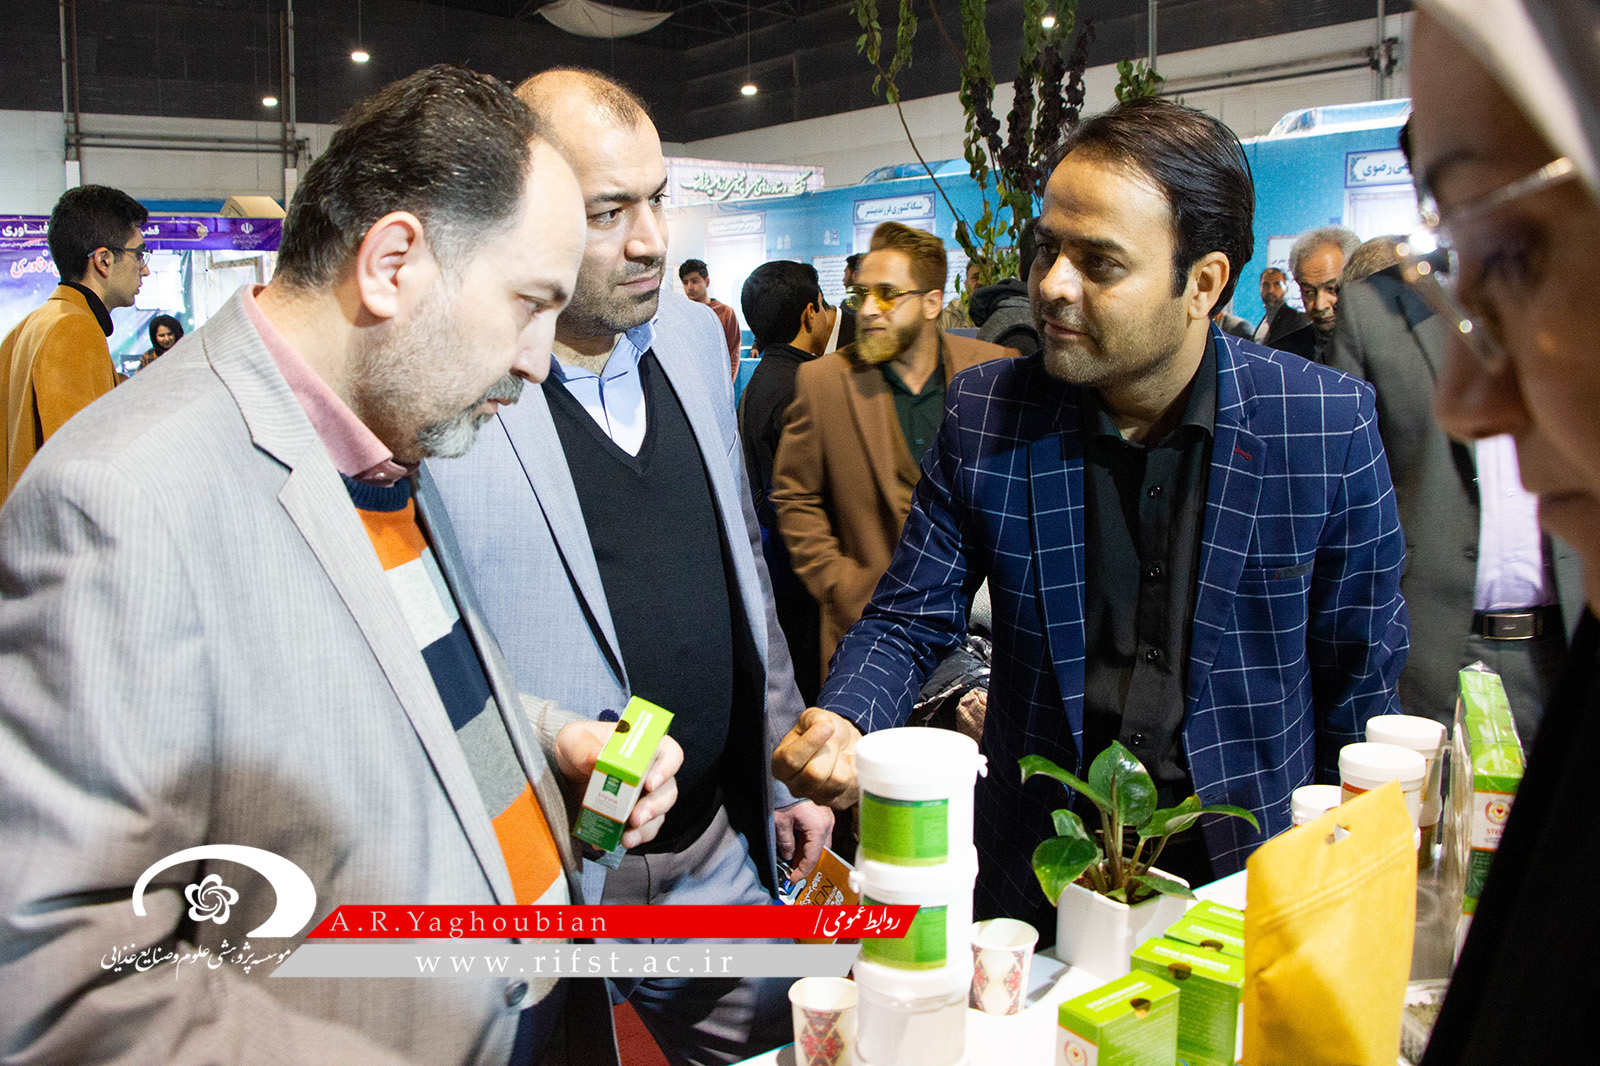 بیست و چهارمین نمایشگاه هفته پژوهش و فناوری با حضور موسسه پژوهشی علوم و صنایع غذایی در مشهد افتتاح شد.